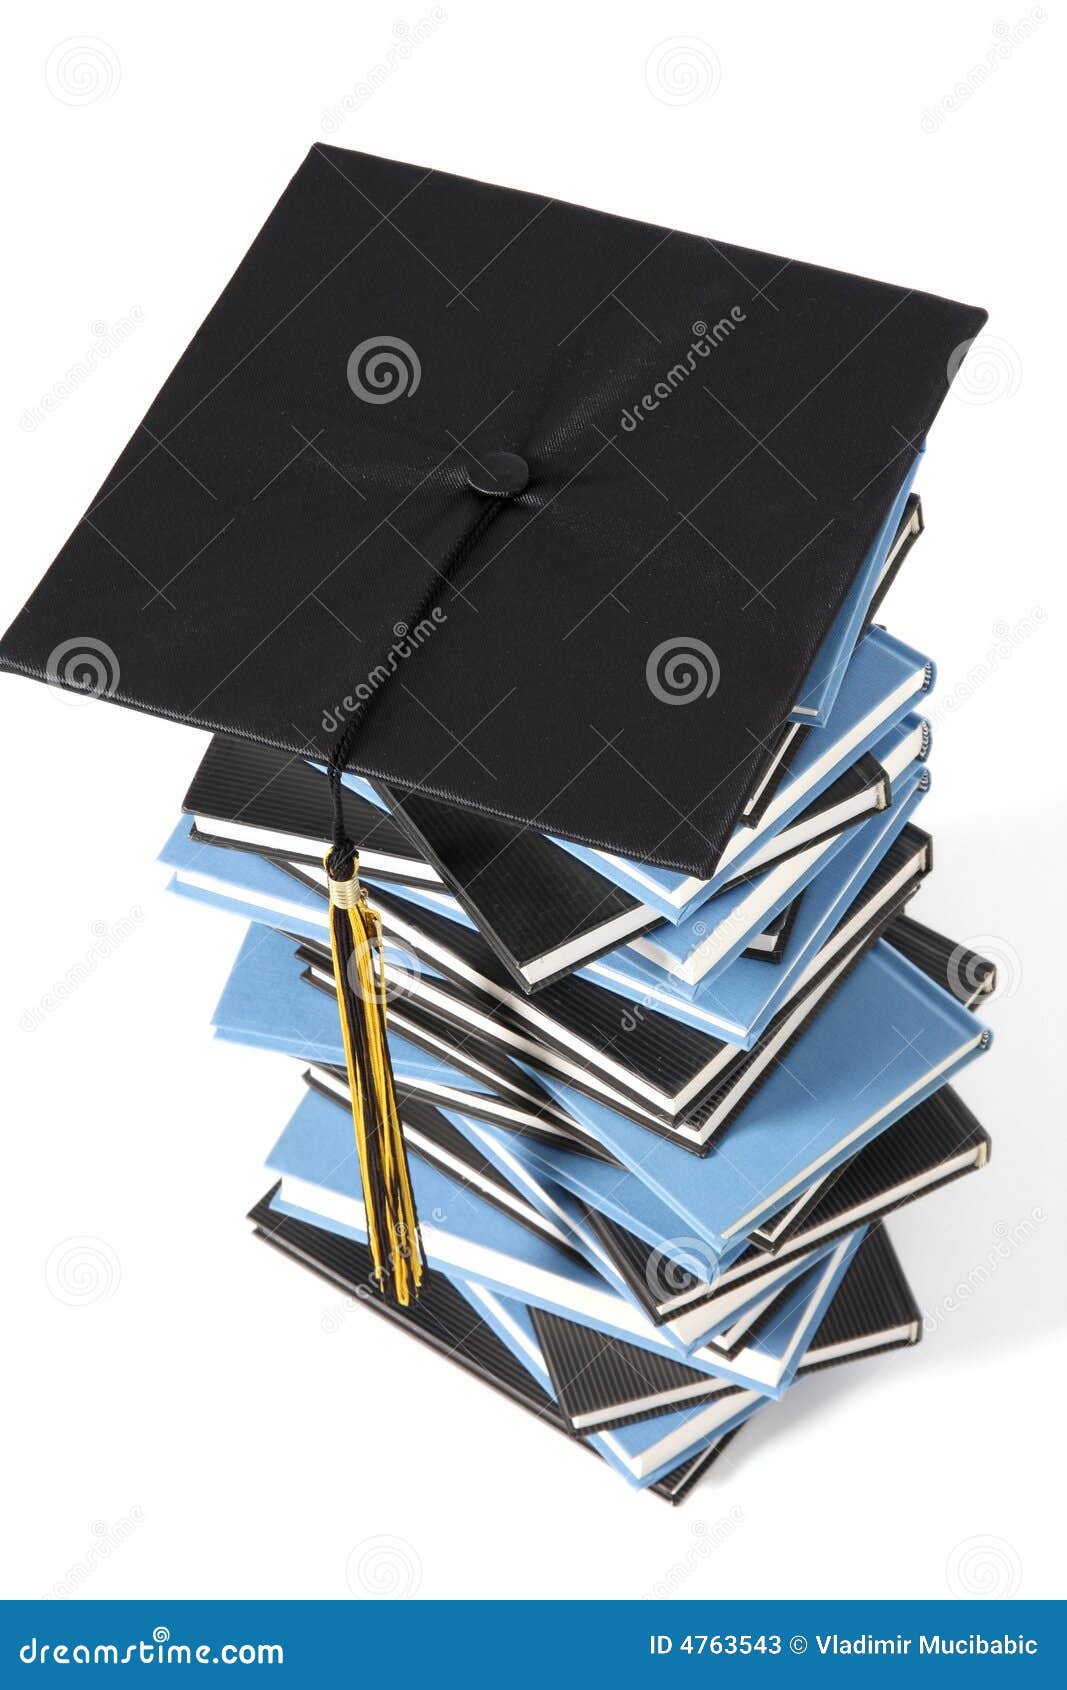 Graduation Cap And Books Stock Photos Image 4763543